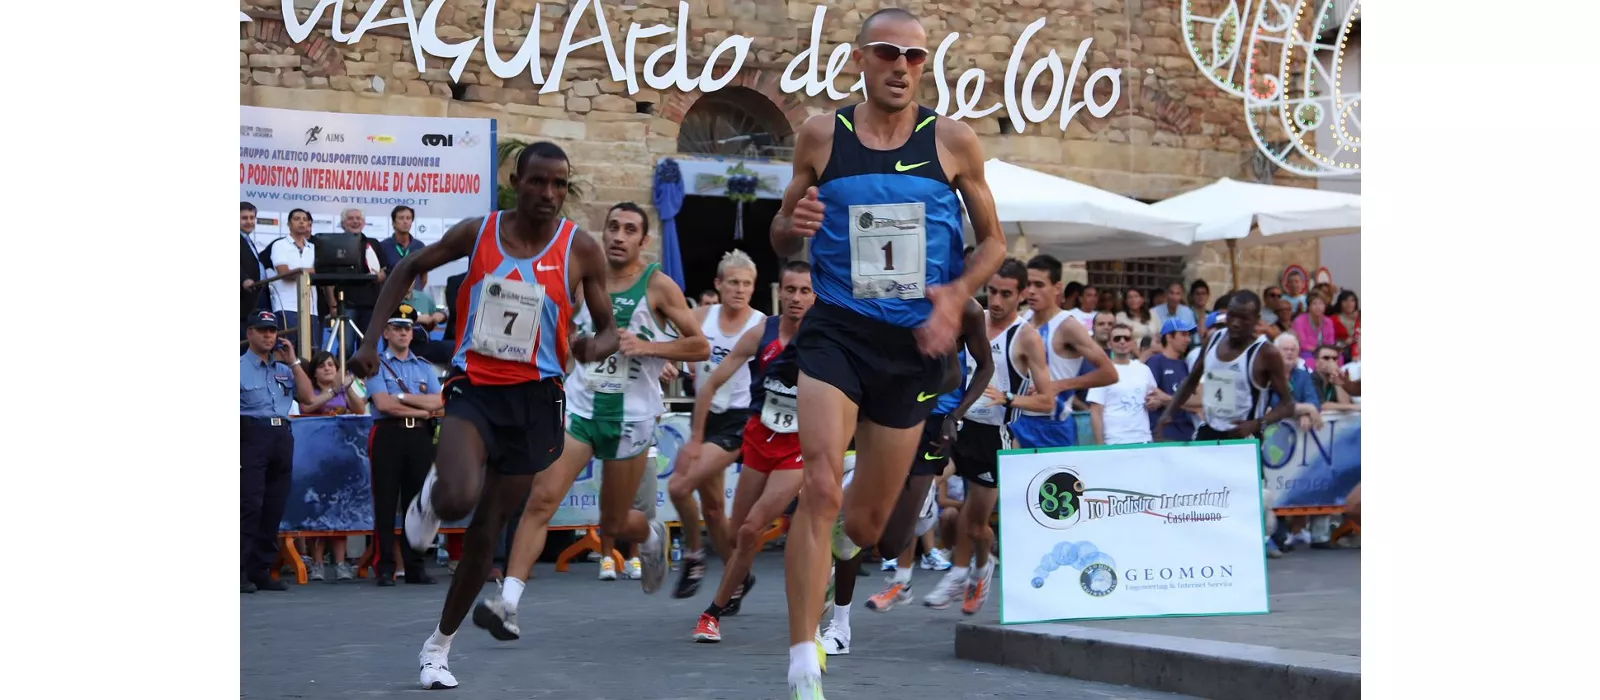 Maratona Castelbuono